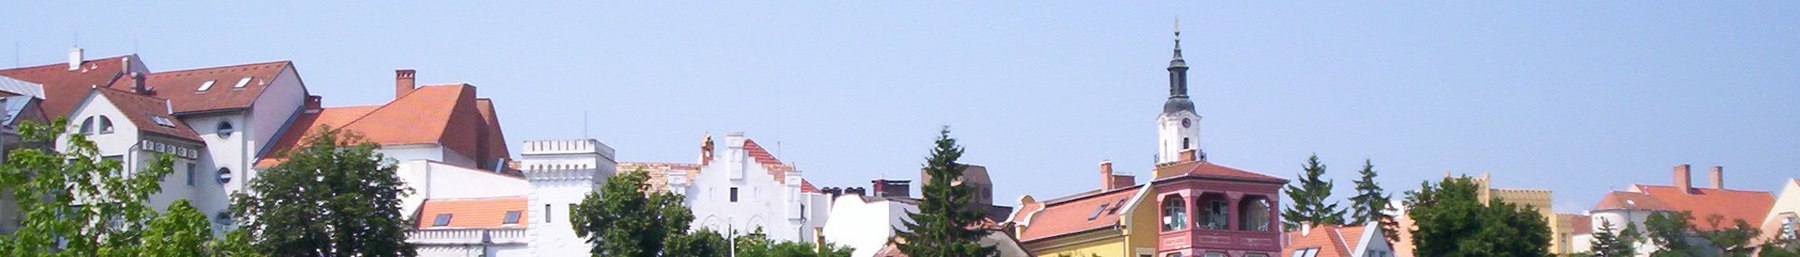 WV banner Veszprem quận Veszprem city view.jpg